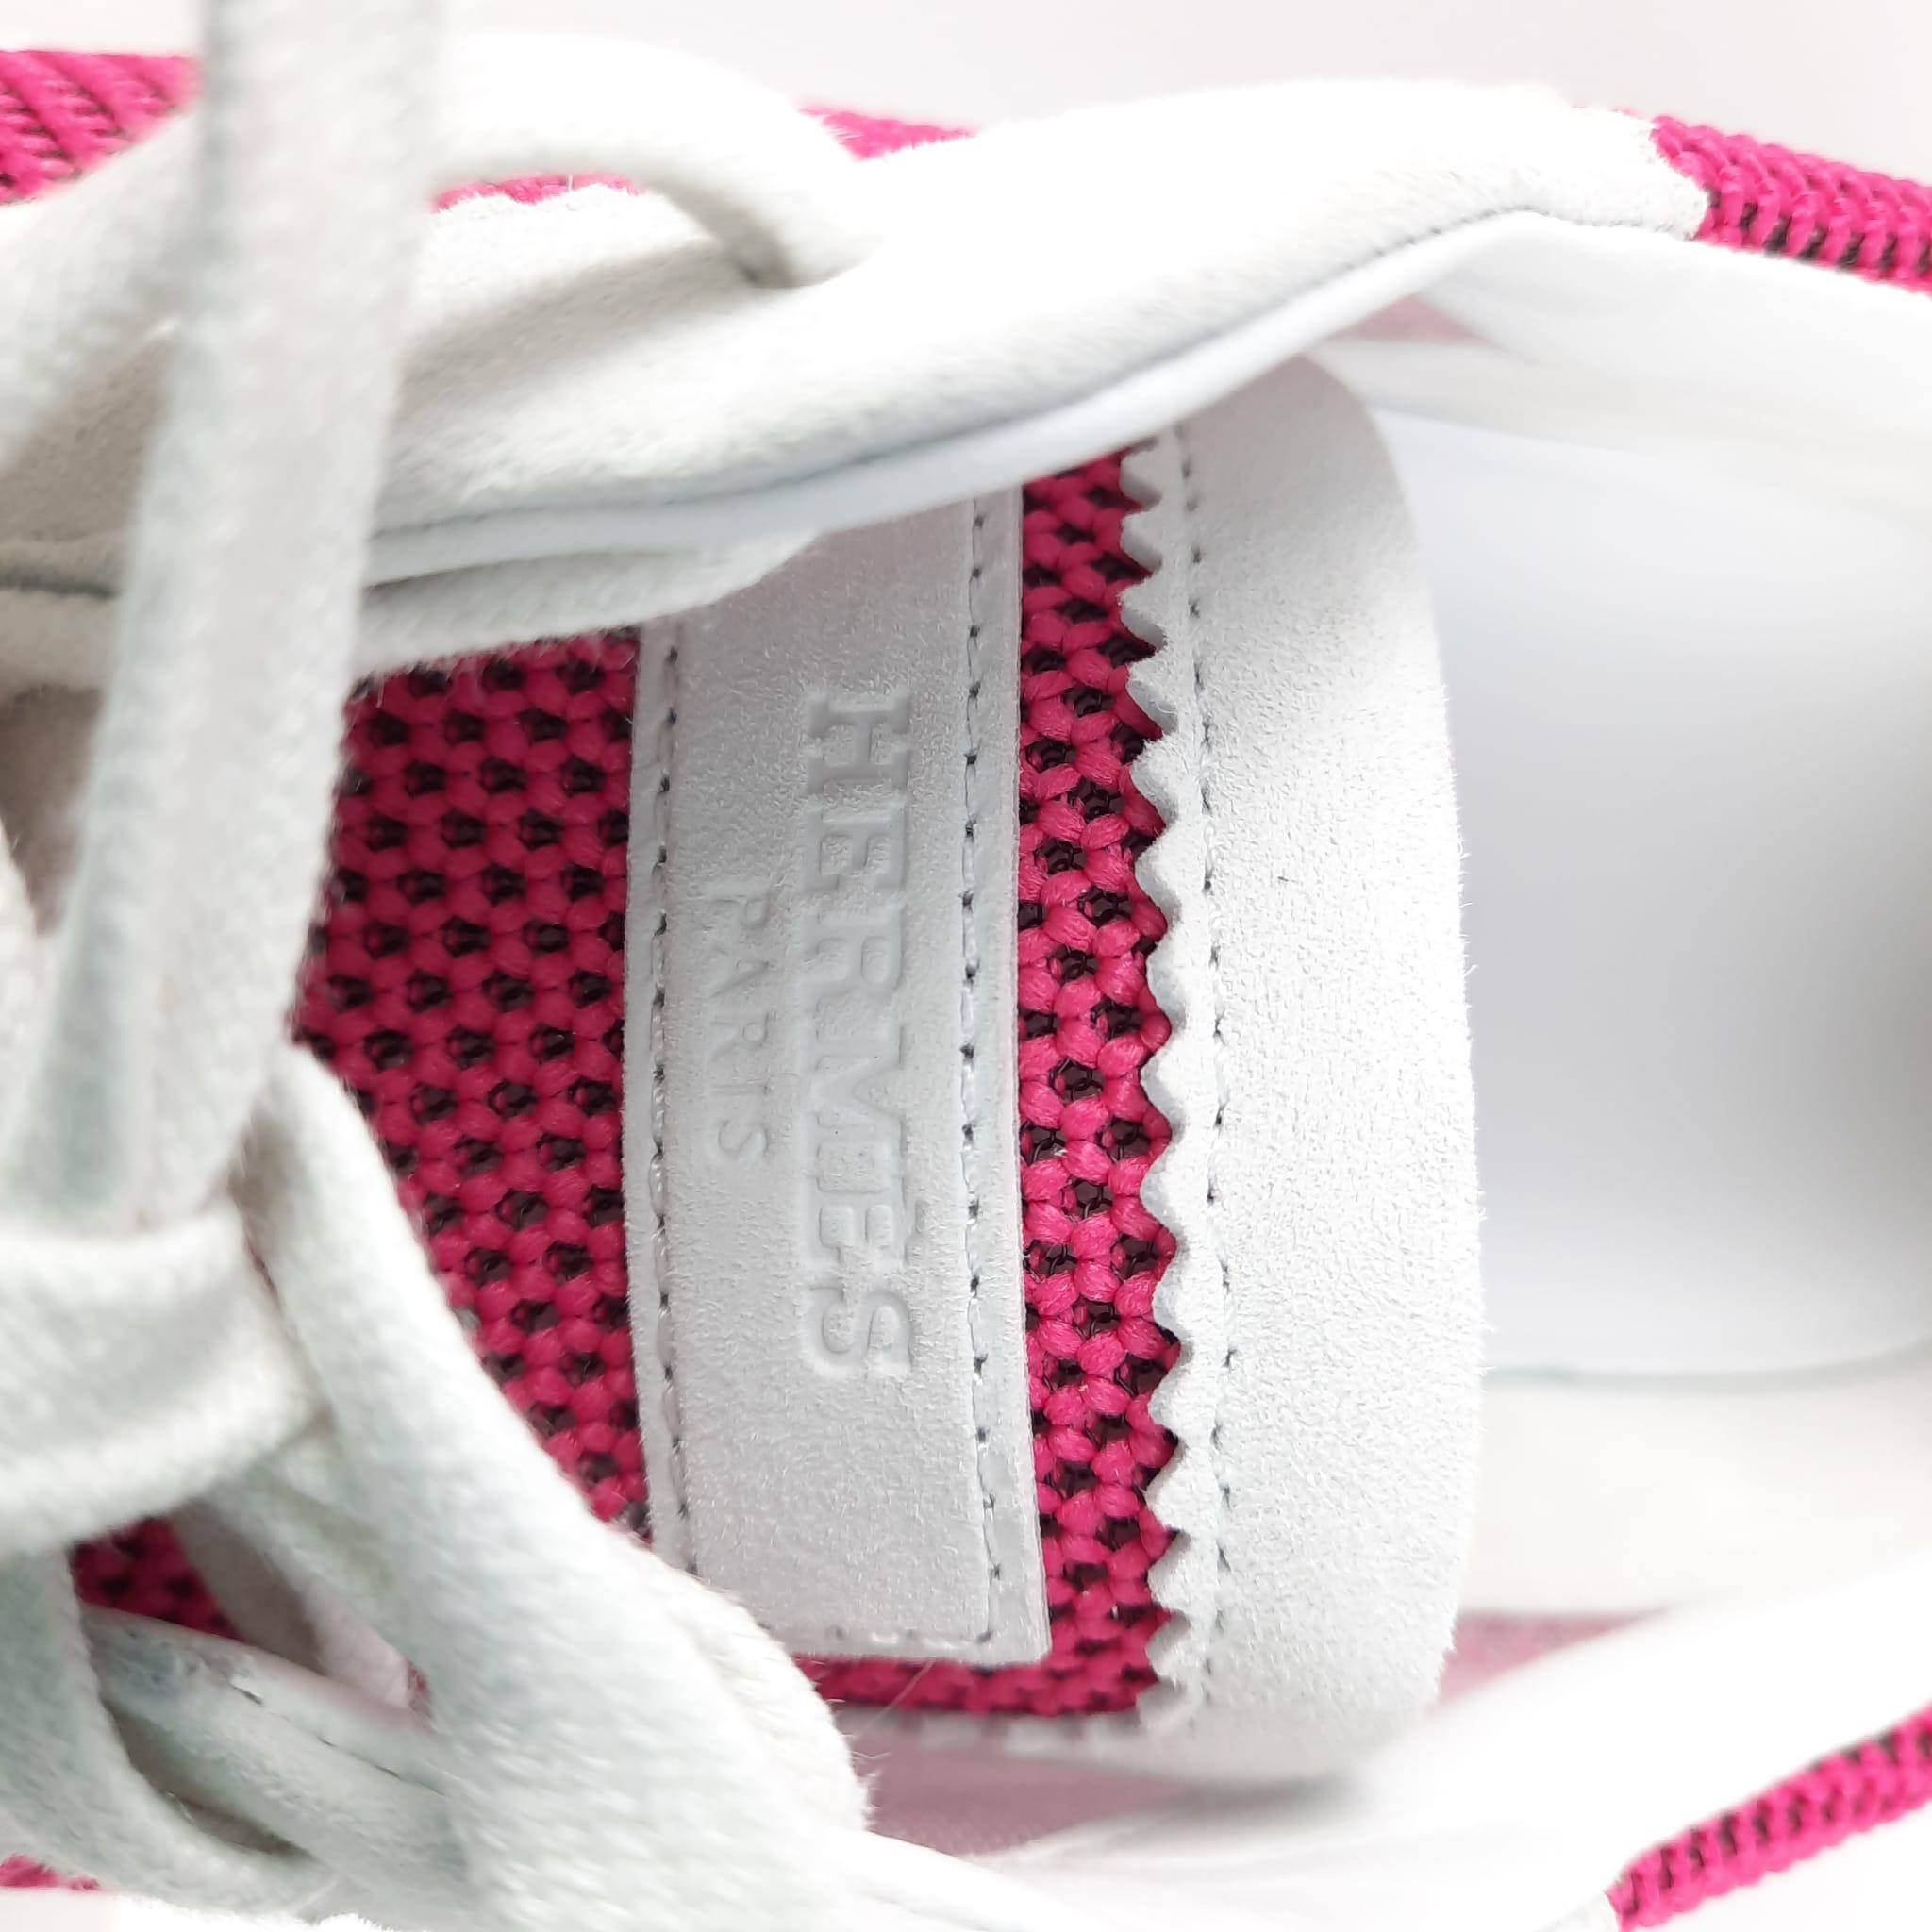  Baskets à bascule Hermès couleur Vinicunca rose/blanc, taille 39  Pour femmes 